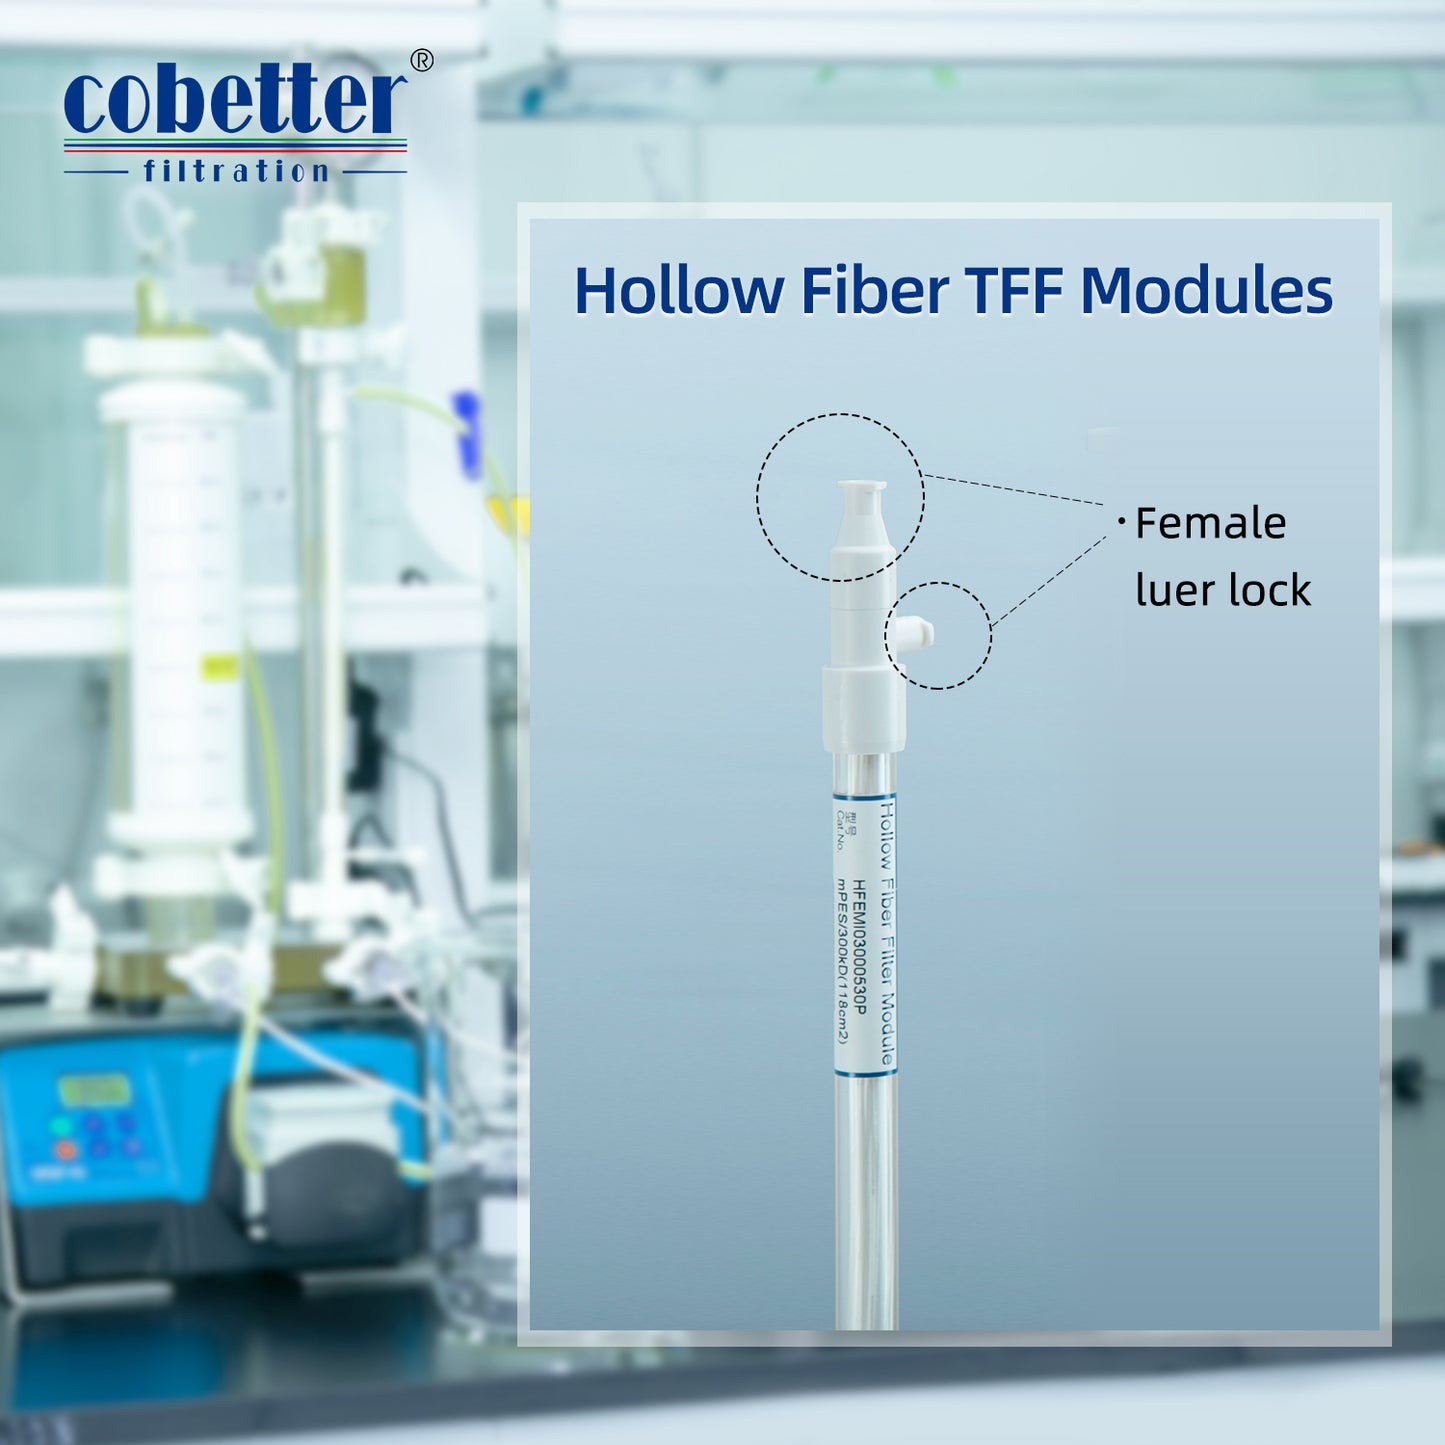 COBETTER 0.5mm MiniLab Hollow Fiber TFF mPES Membrane